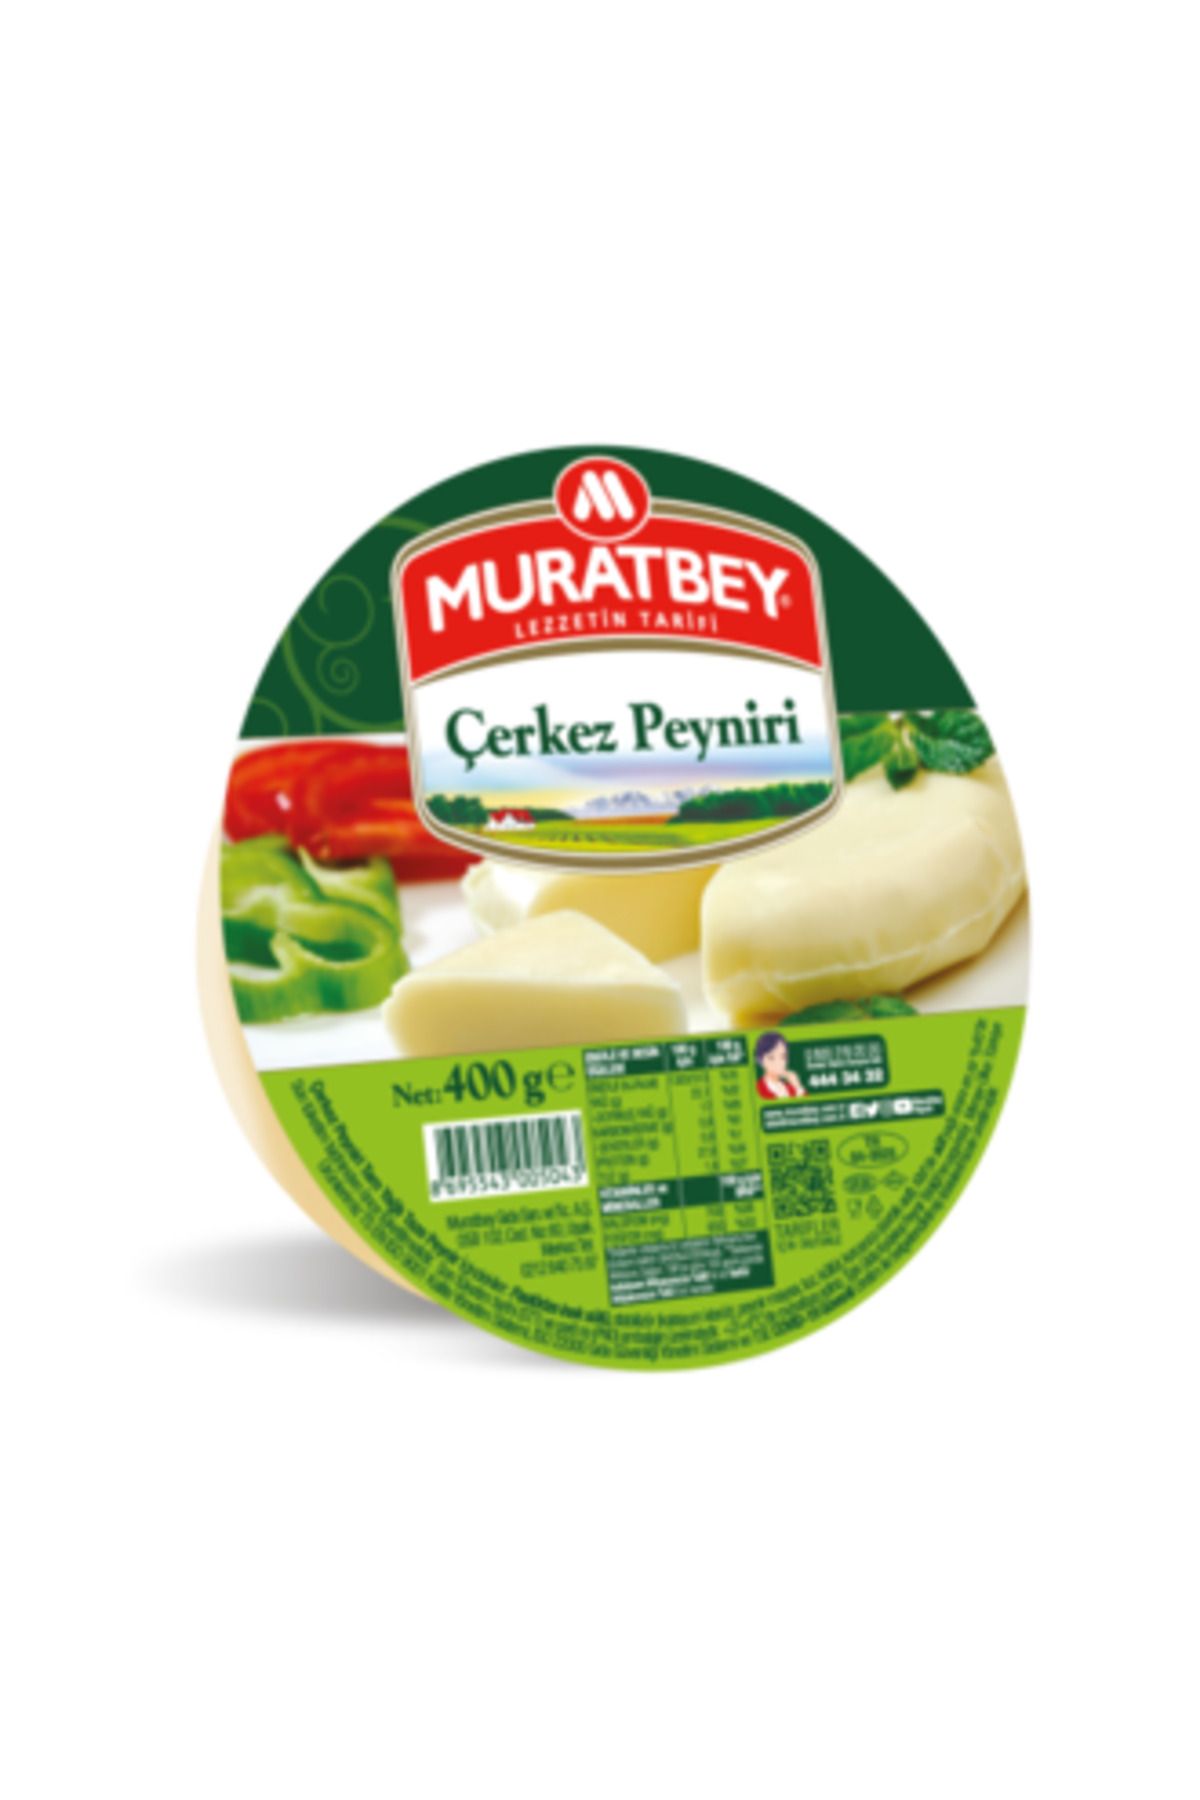 Muratbey ( DİLİM KARPER HEDİYE ) Muratbey Çerkez Peyniri 400 Gr